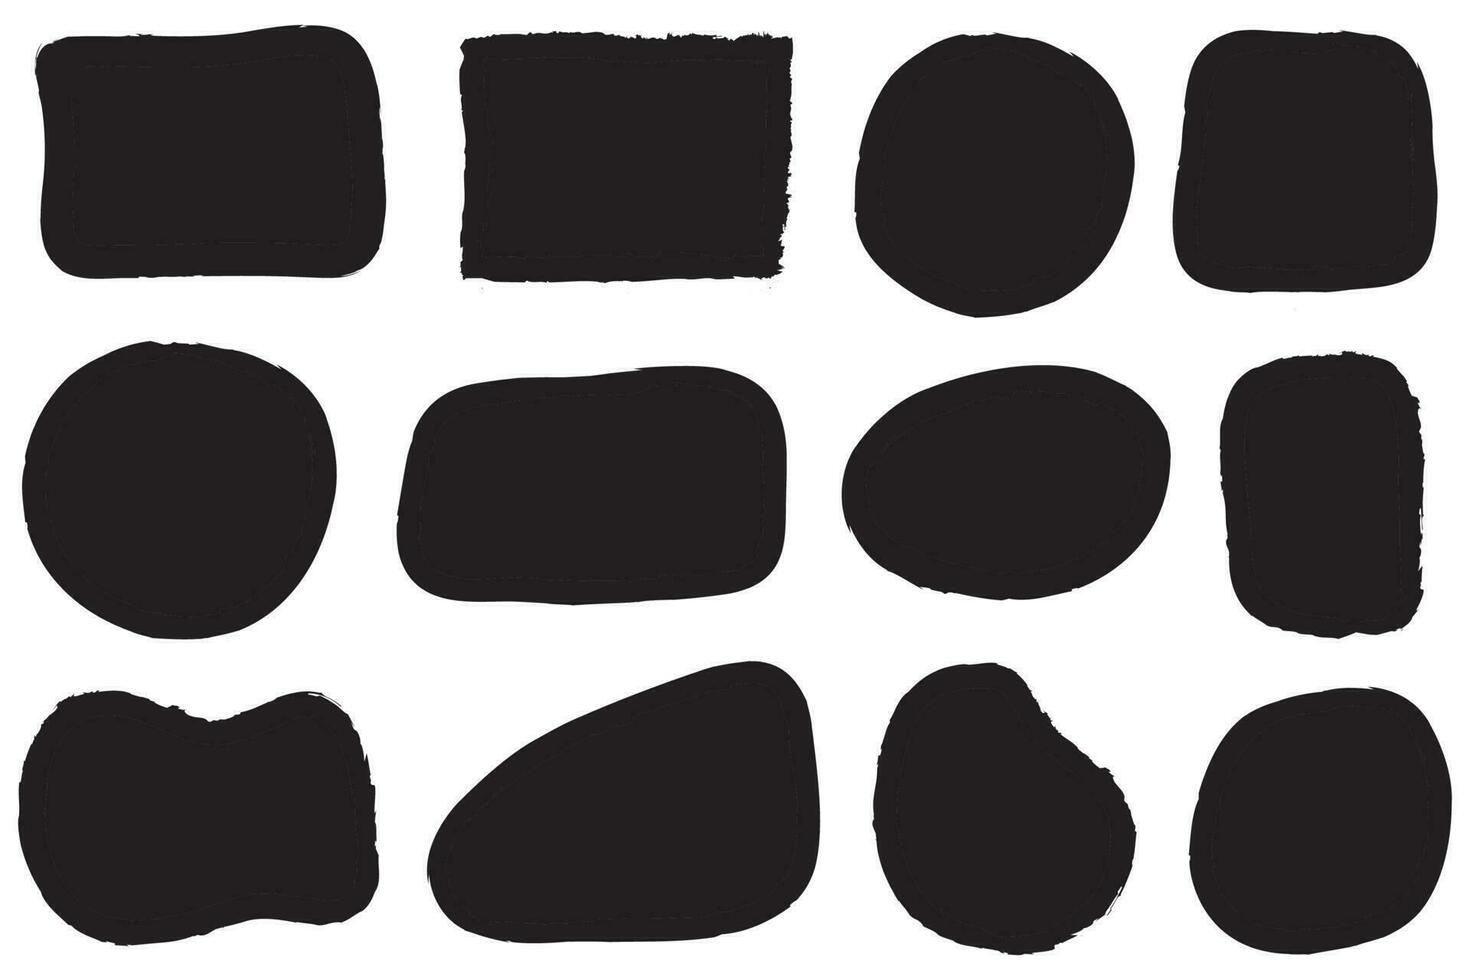 uppsättning av trasig papper ramar. vektor collage form av svart rev papper silhuetter isolerat på vit bakgrund.